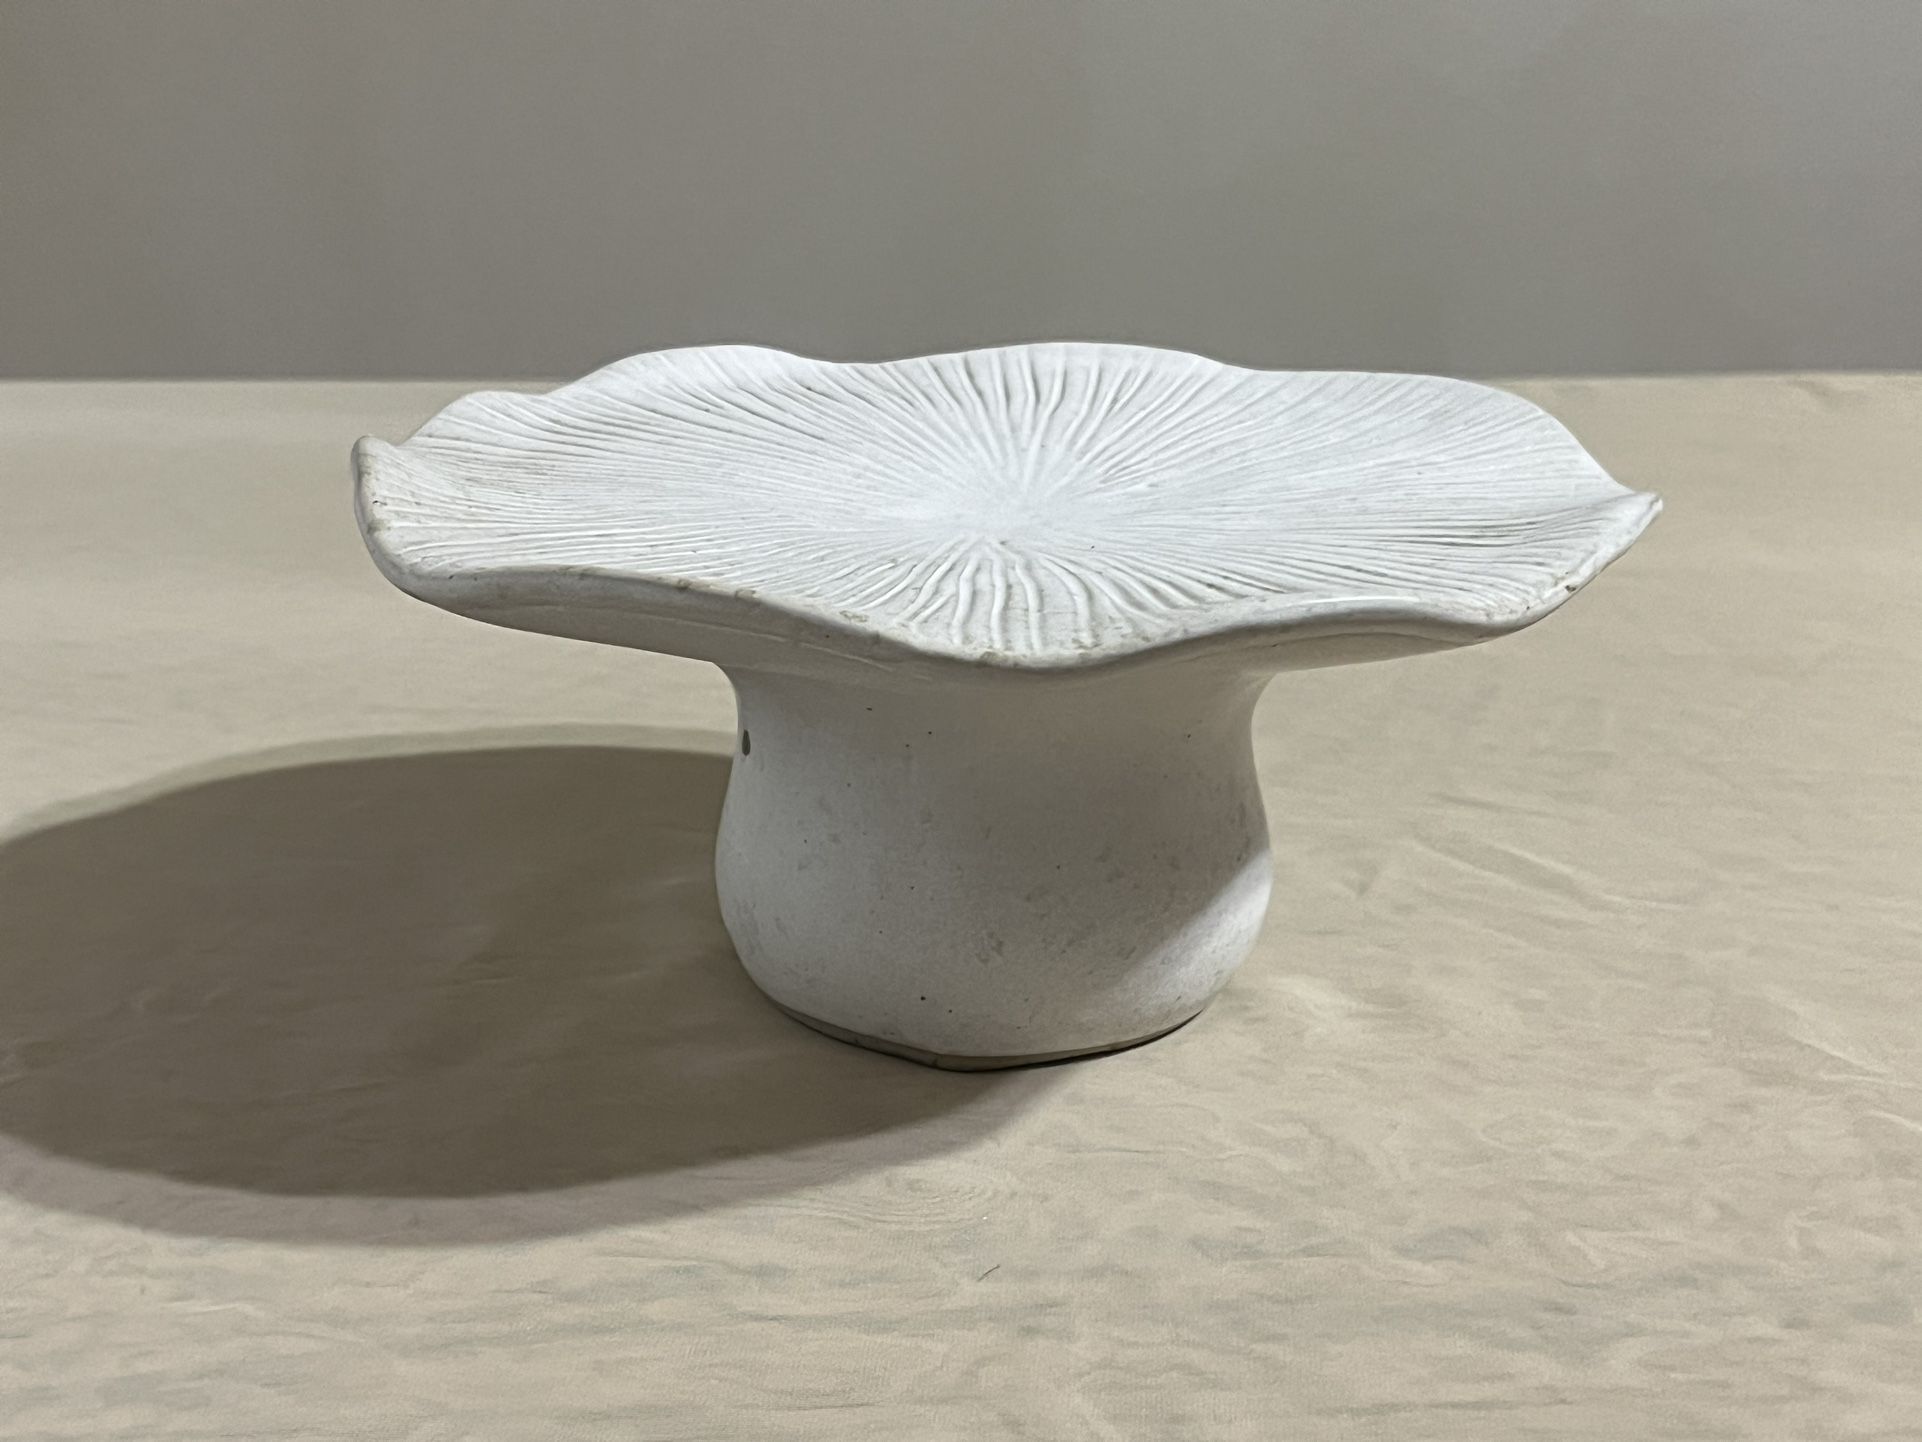 Mushroom ceramic pedestal decoration figurine rare unique